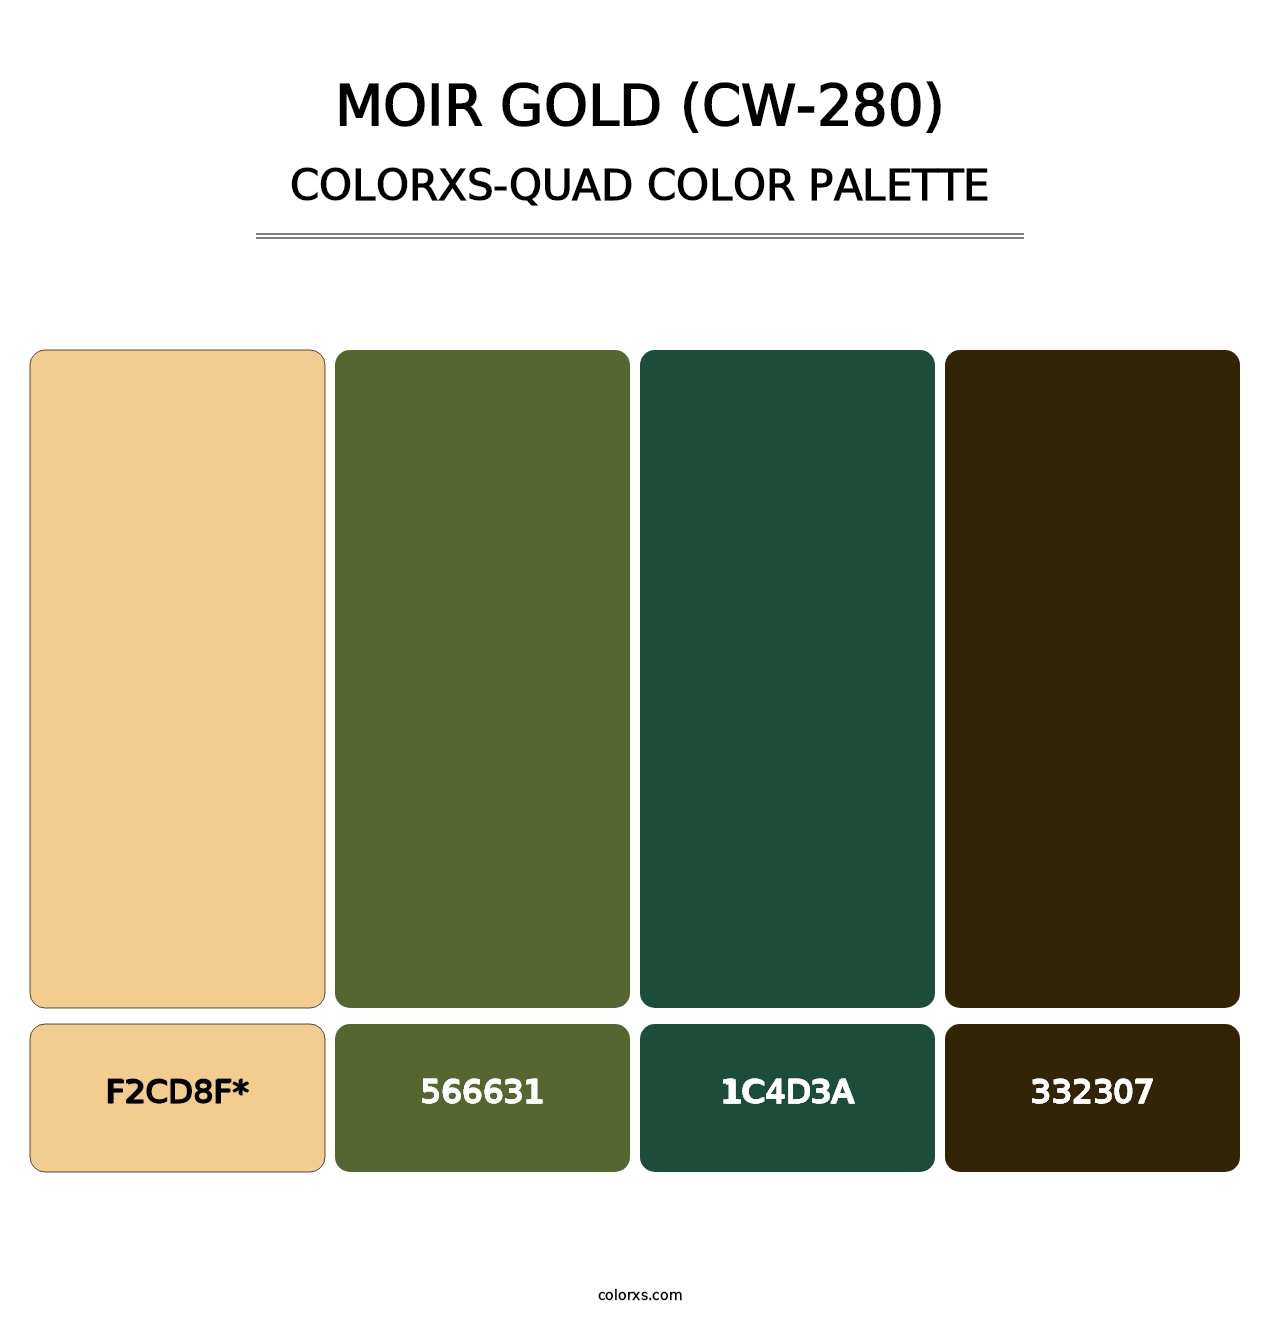 Moir Gold (CW-280) - Colorxs Quad Palette